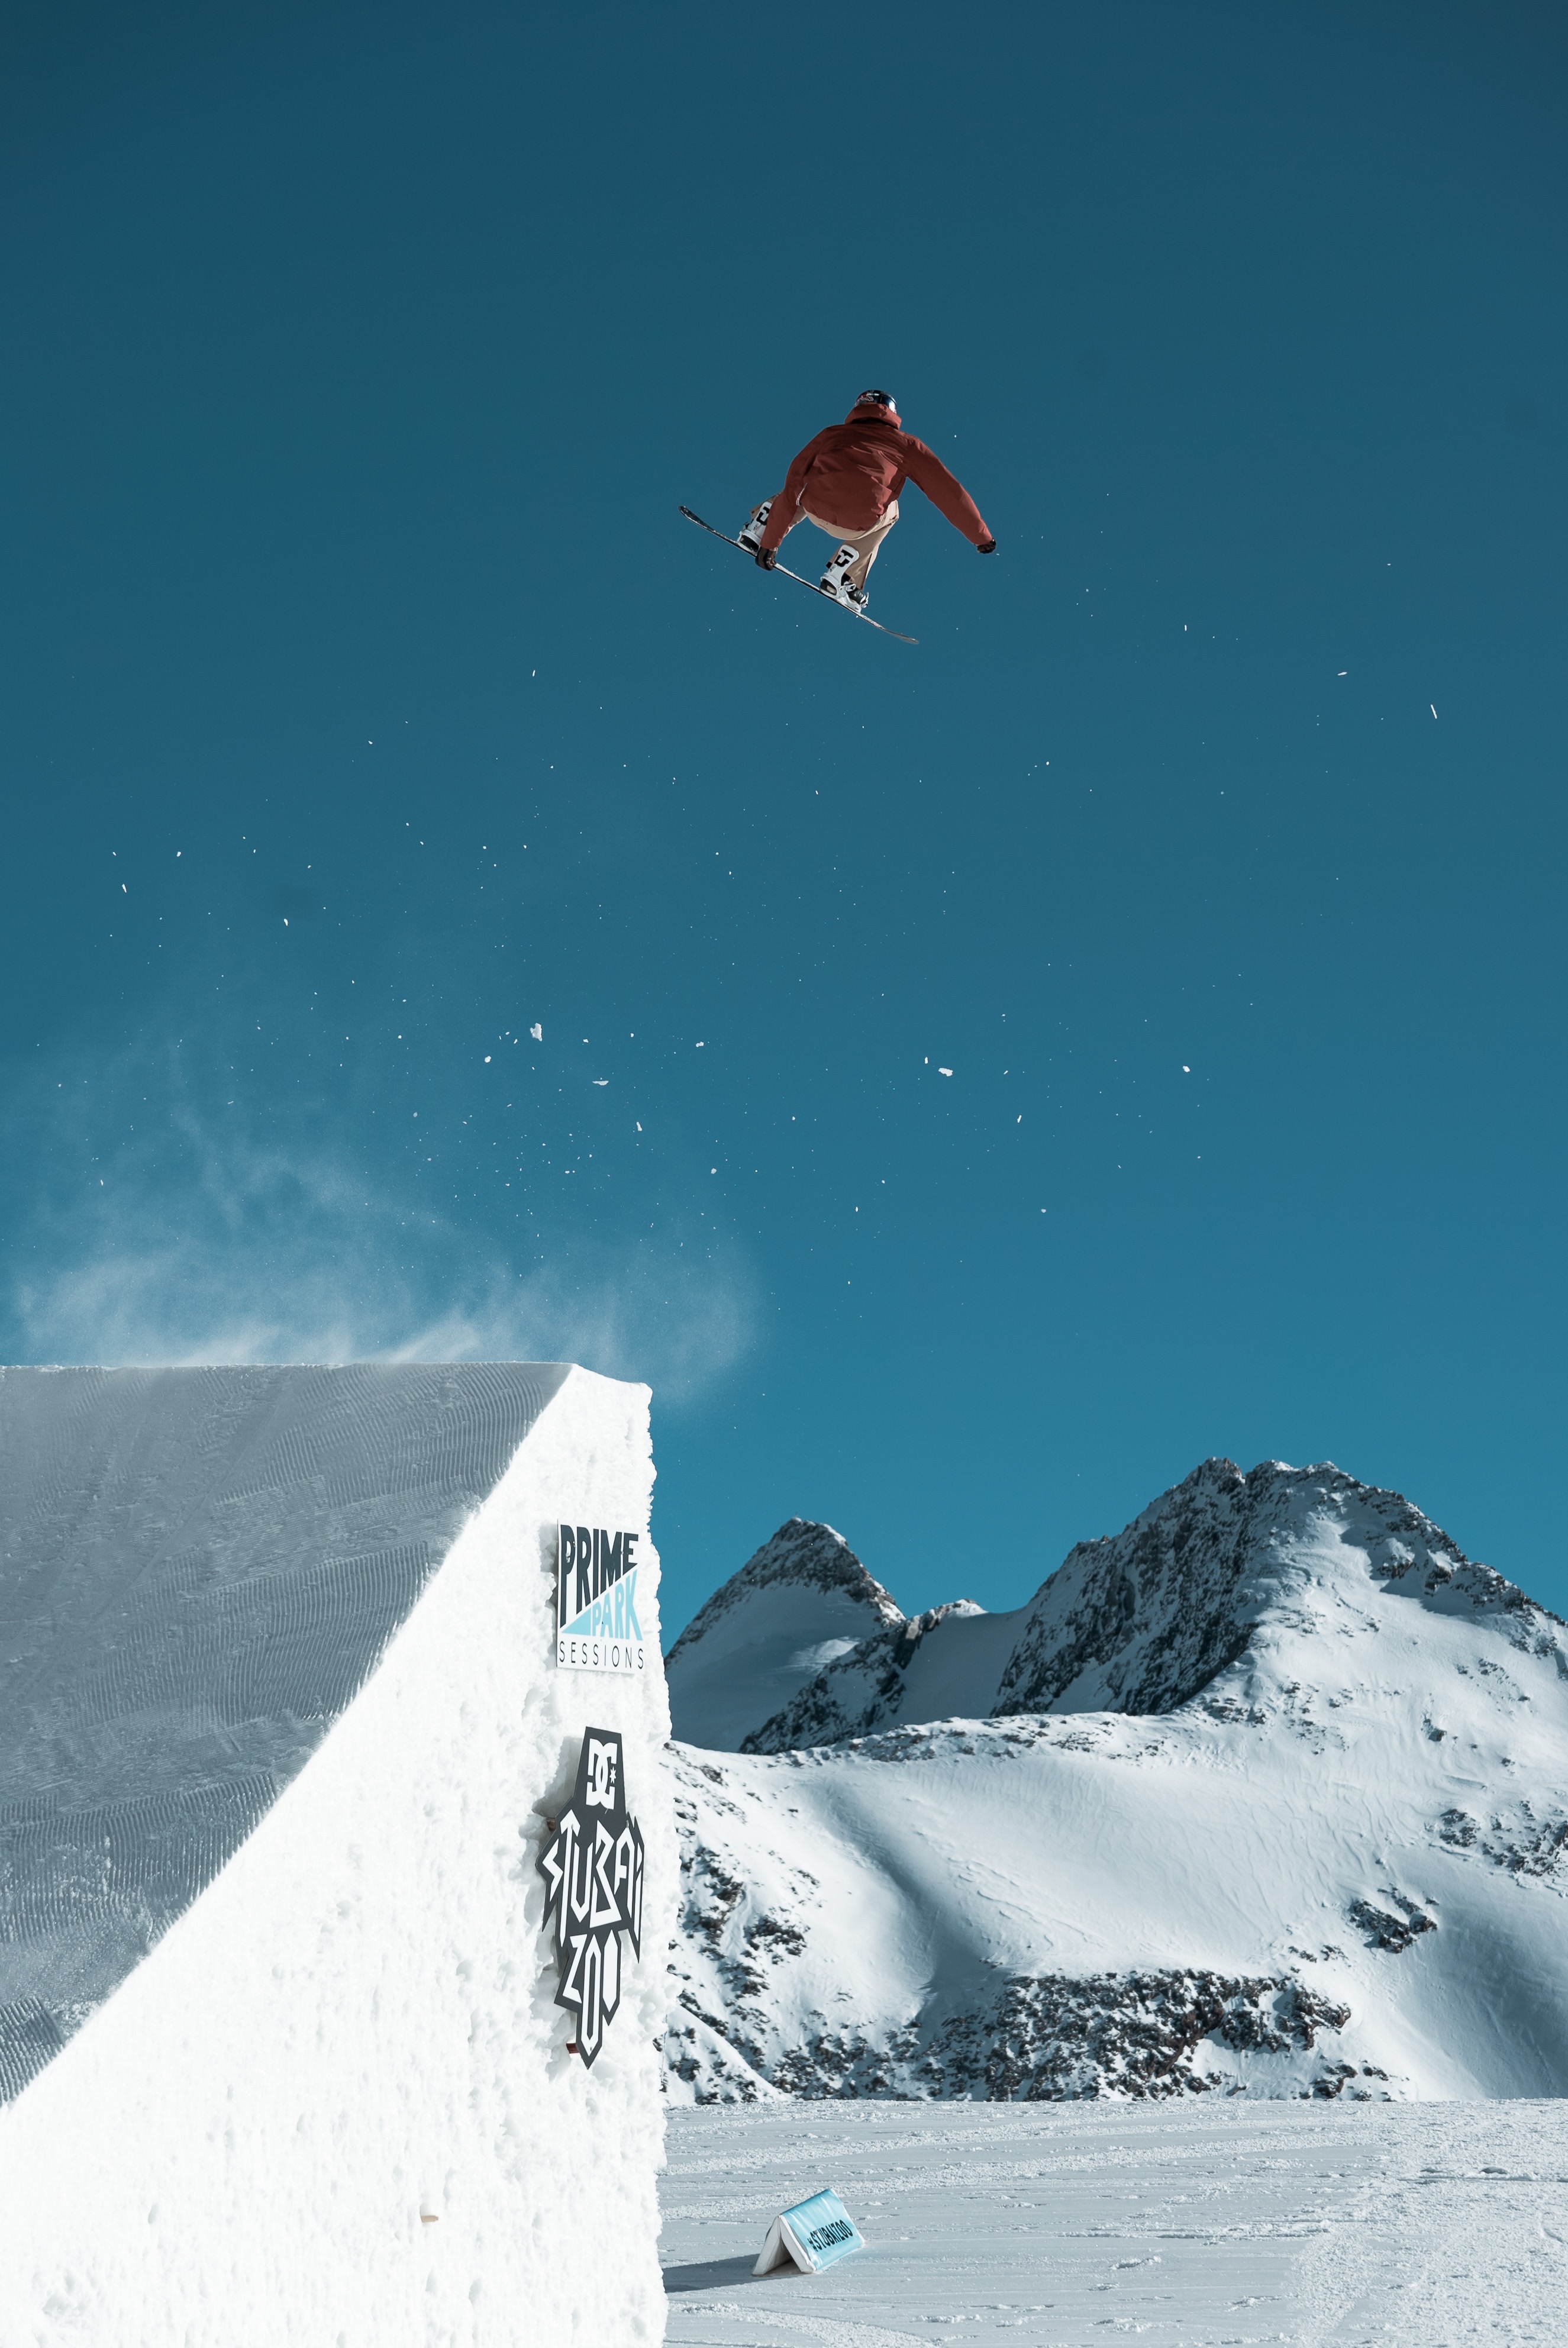 Cool ski jump